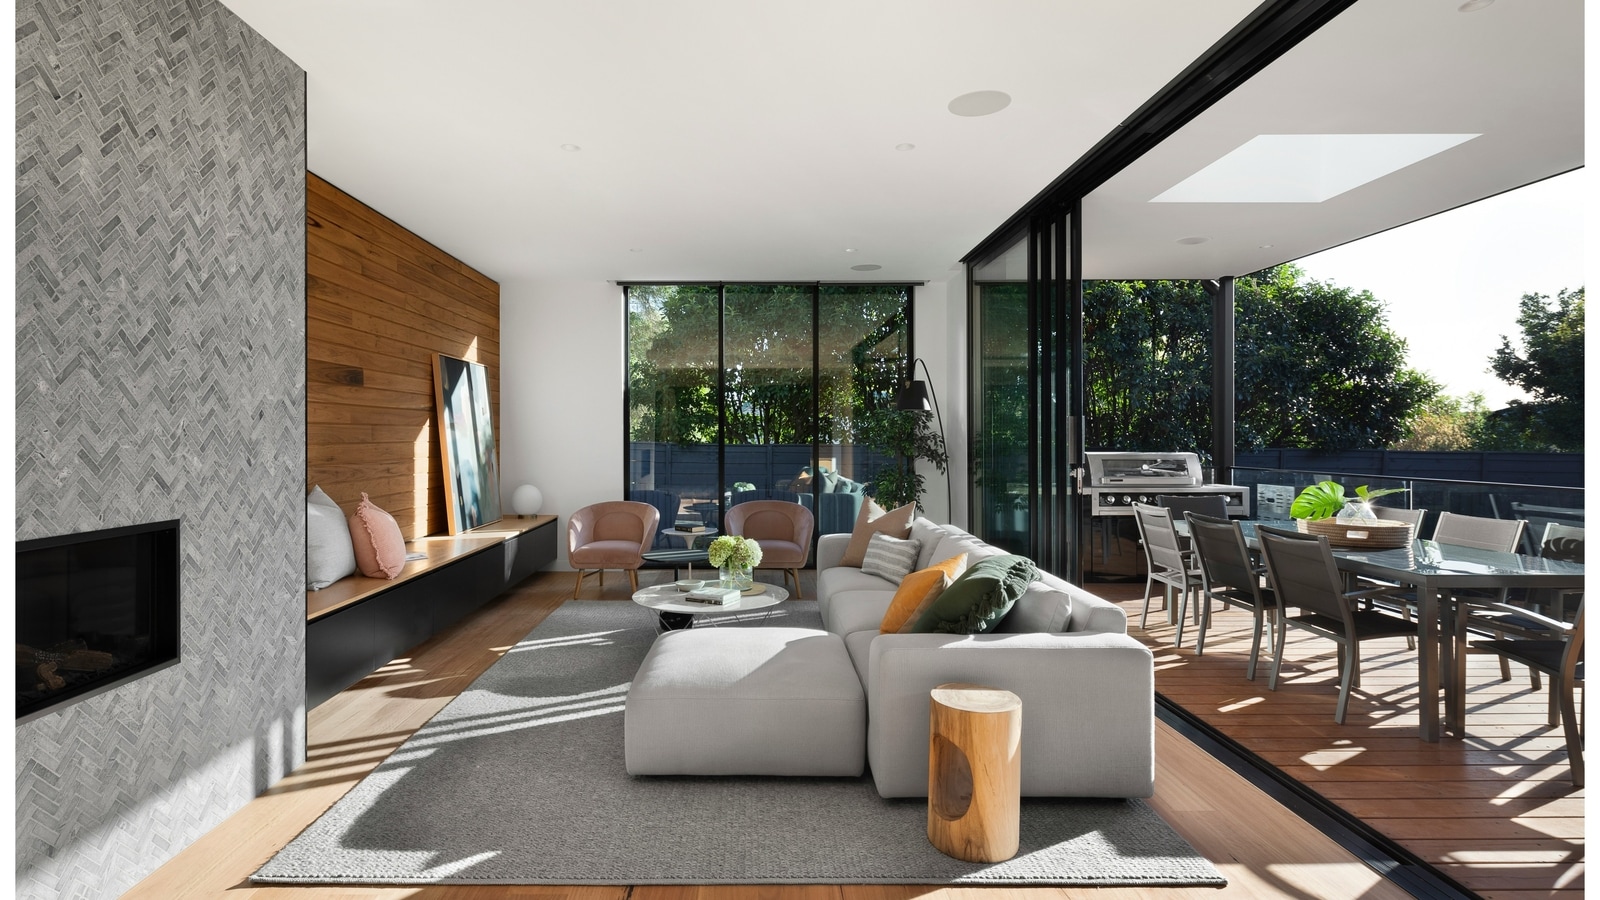 घर के नवीनीकरण के विचार: इंटीरियर डिजाइन करने के लिए 5 युक्तियाँ जो आधुनिक जीवनशैली के लिए व्यावहारिकता के साथ सौंदर्यशास्त्र का मिश्रण करती हैं